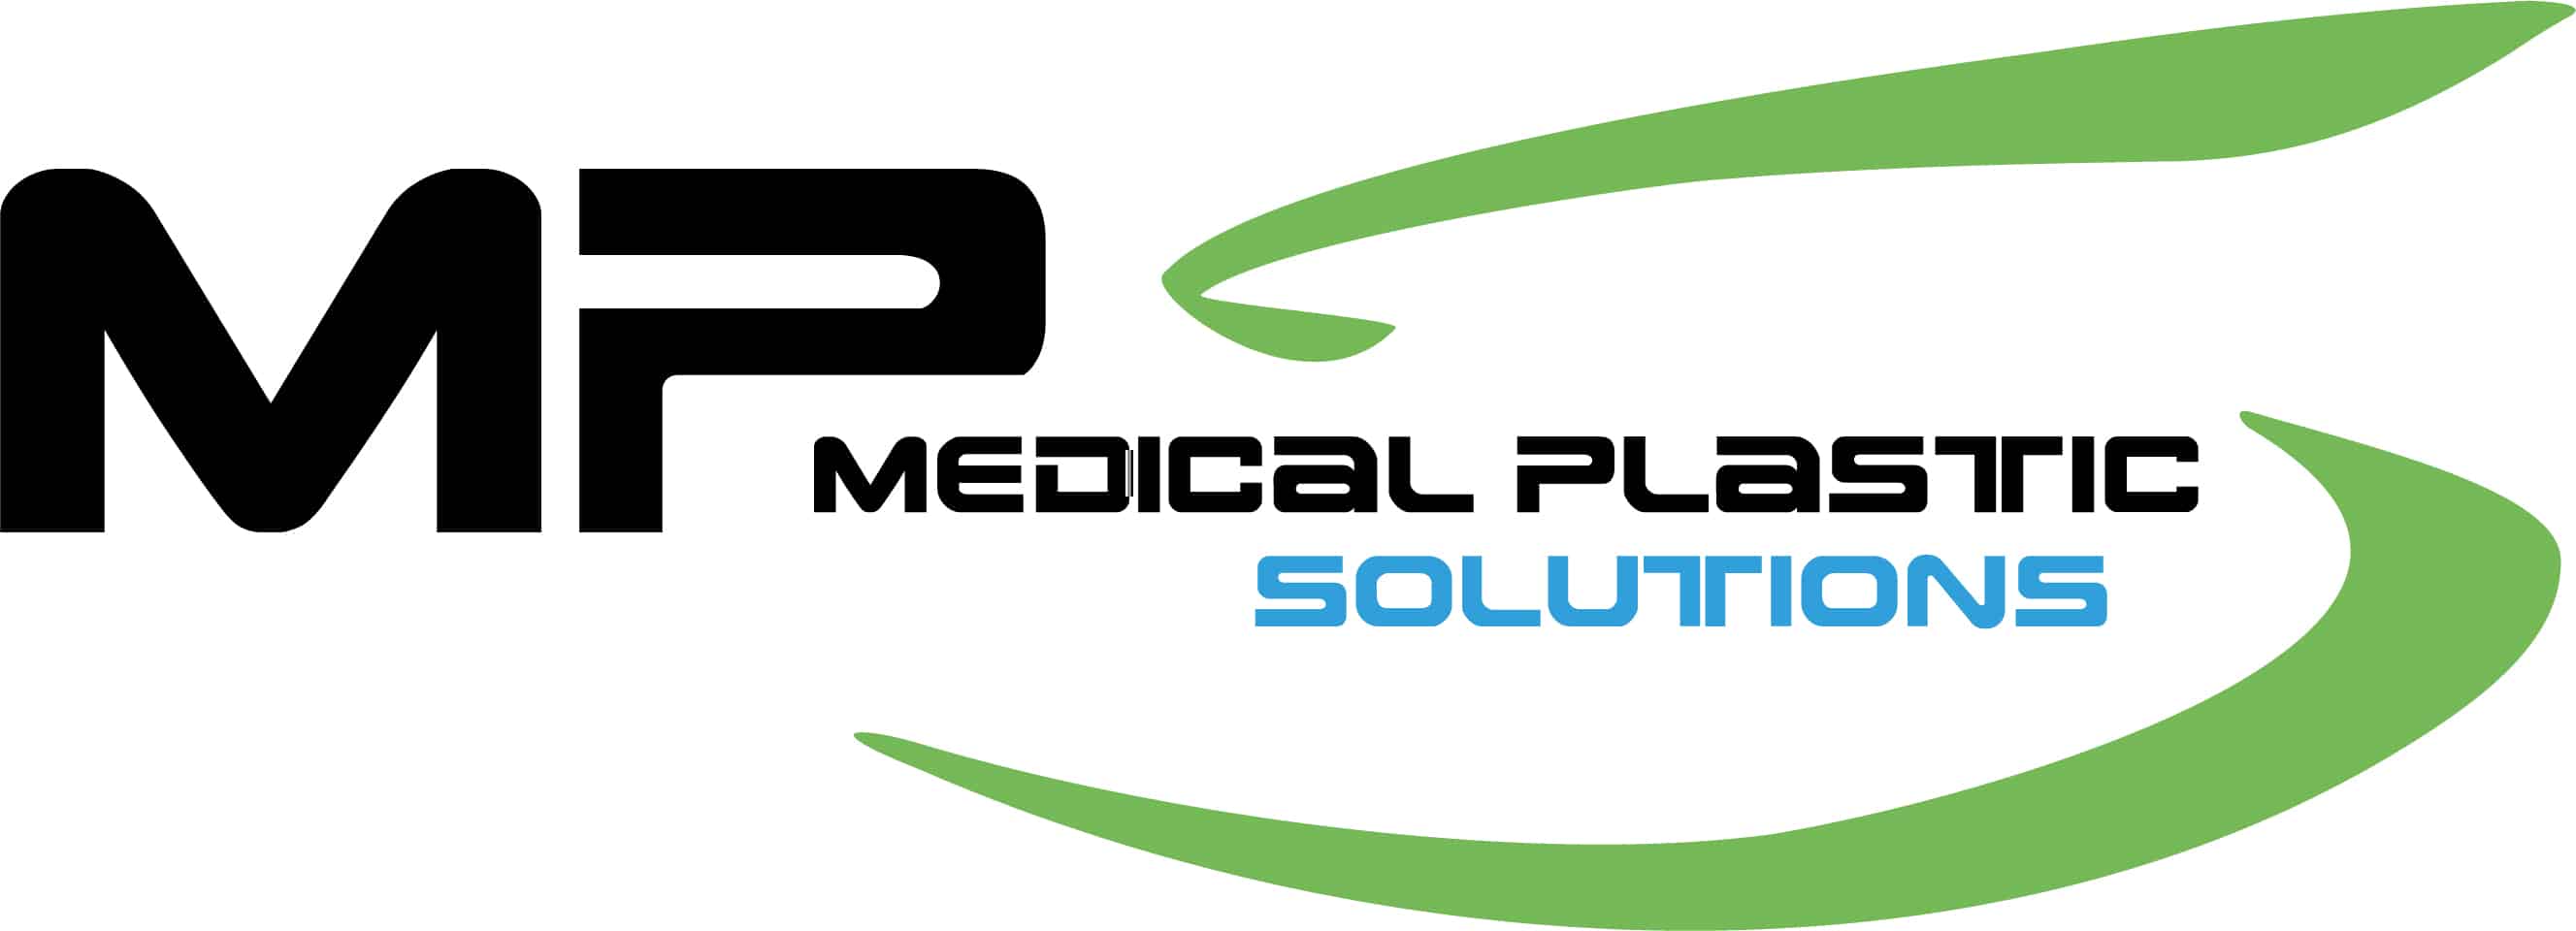 Médical Plastic Solutions, L'injection plastique pour pièces plastiques médicales, spécialiste bi-matière